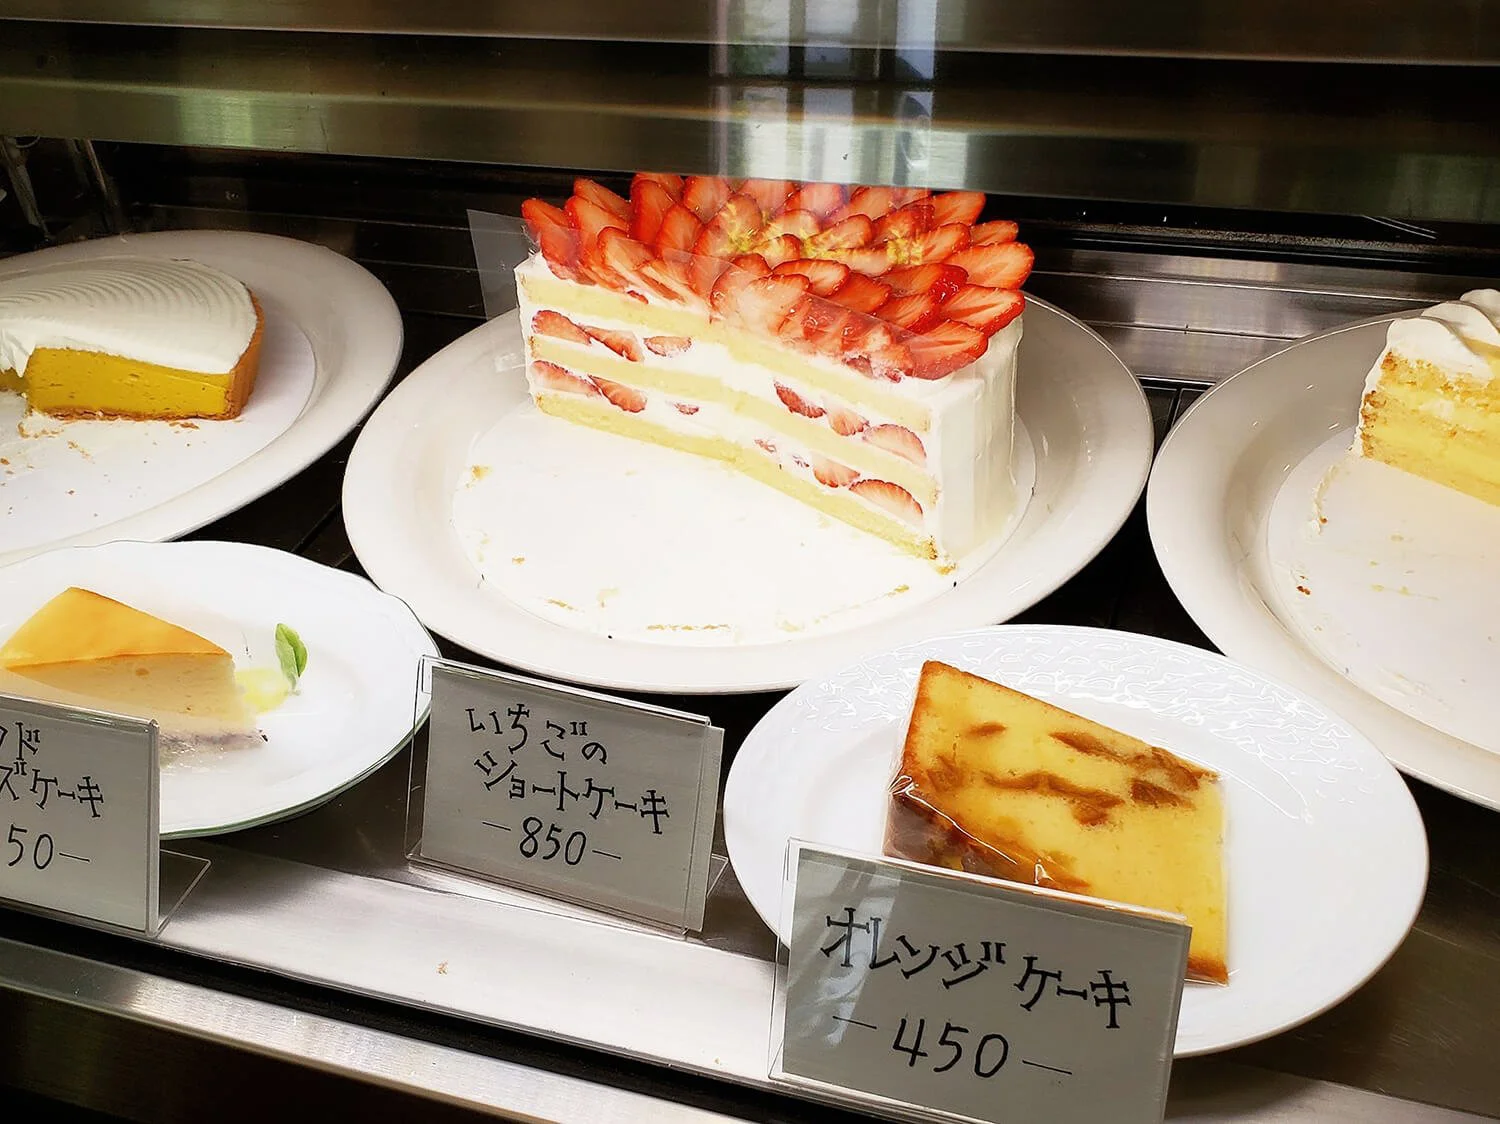 Tea Cake Grace 西荻窪 ケーキ さんたつ By 散歩の達人